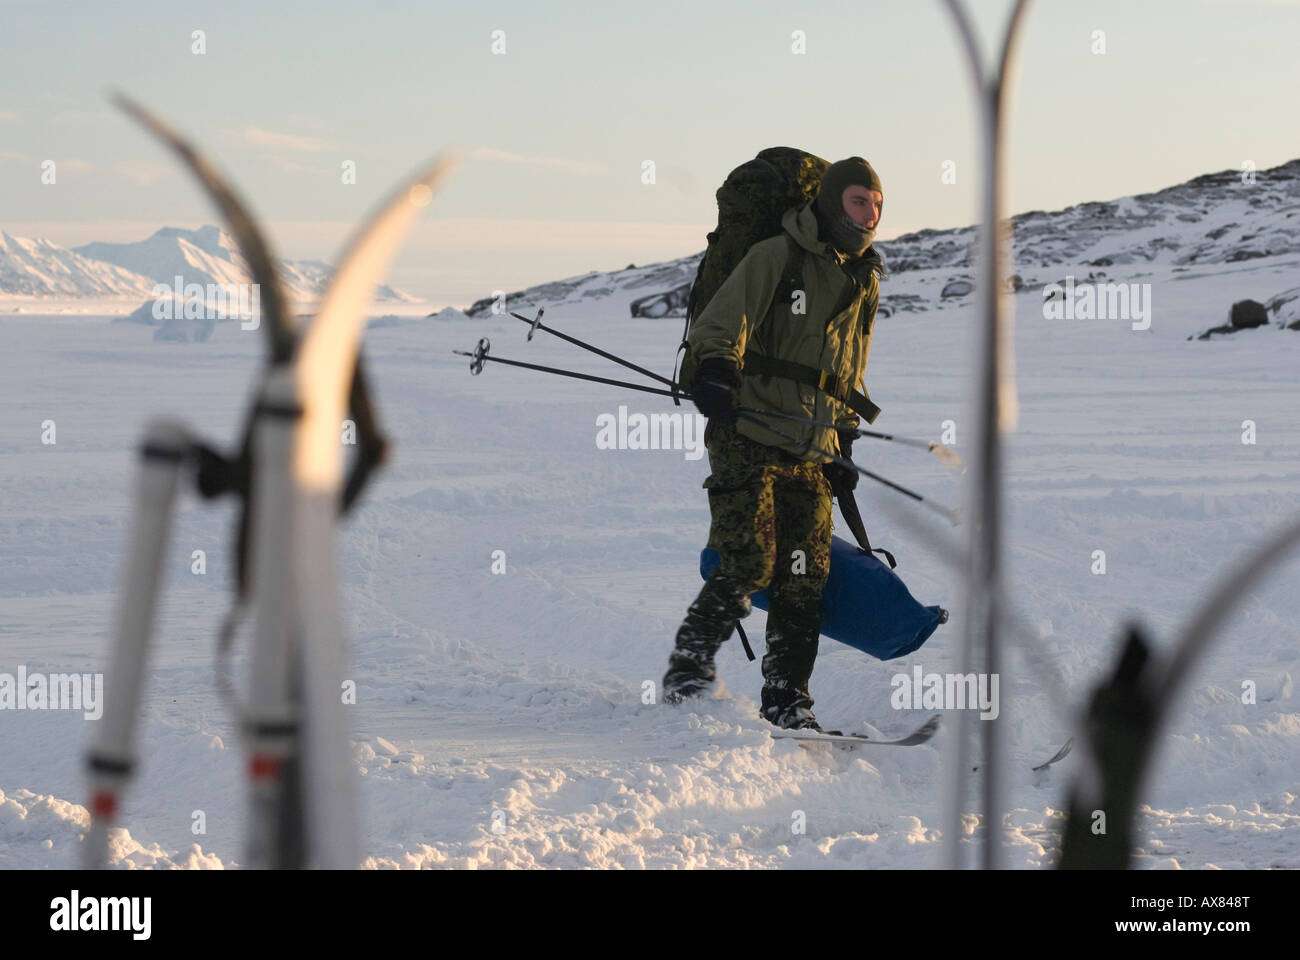 Semaine de survie des Forces spéciales danois patrouille chien Sirius Mestersvig Groenland Nord-Est formation de ski de fond. Banque D'Images